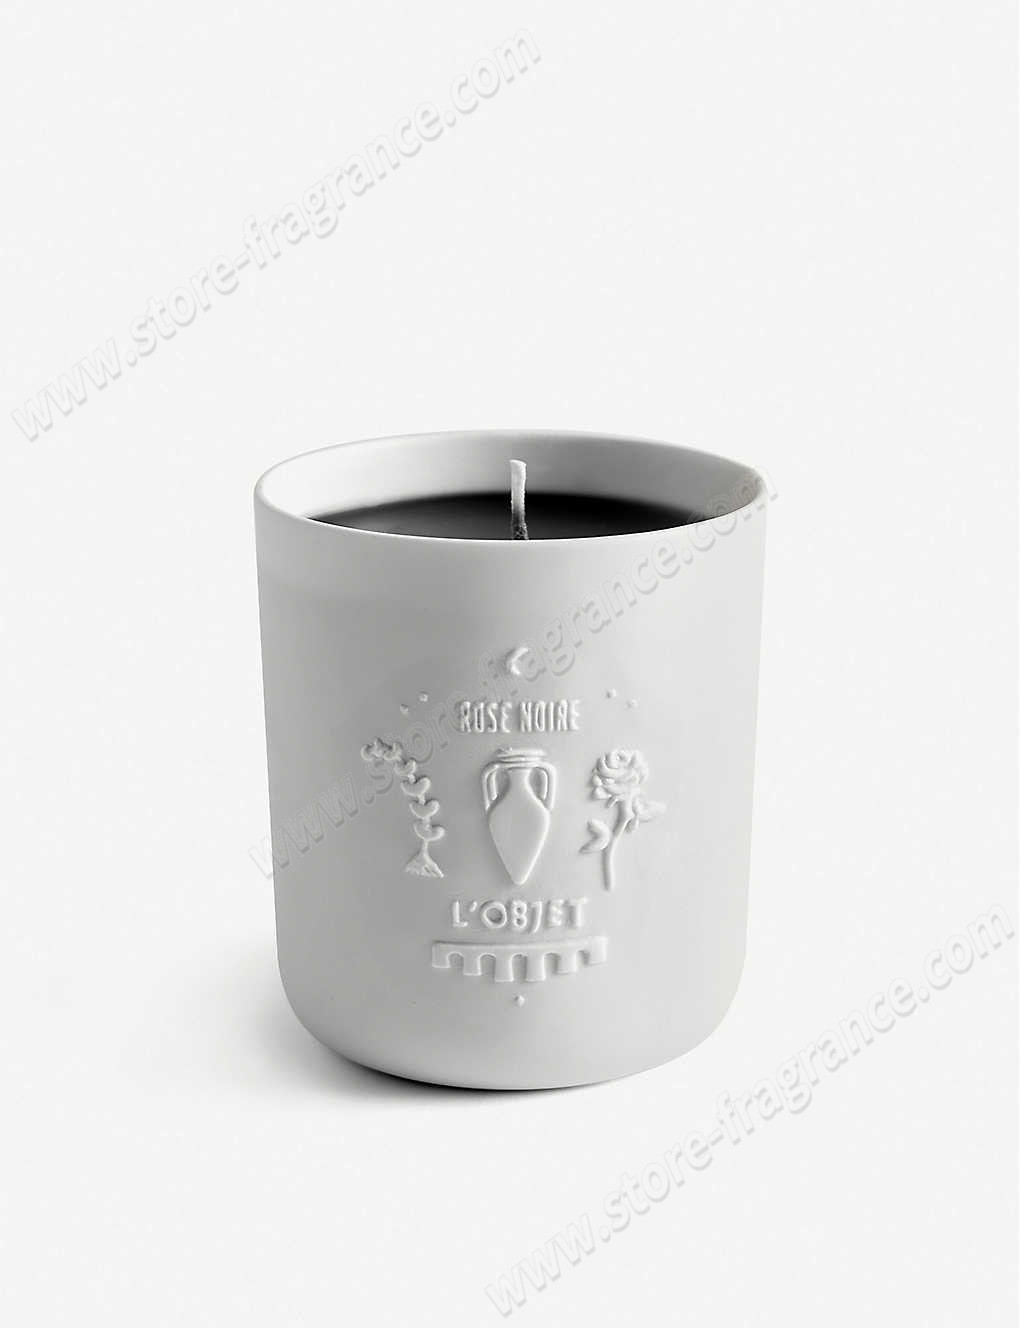 L'OBJET/Rose Noir candle 285g ✿ Discount Store - -0